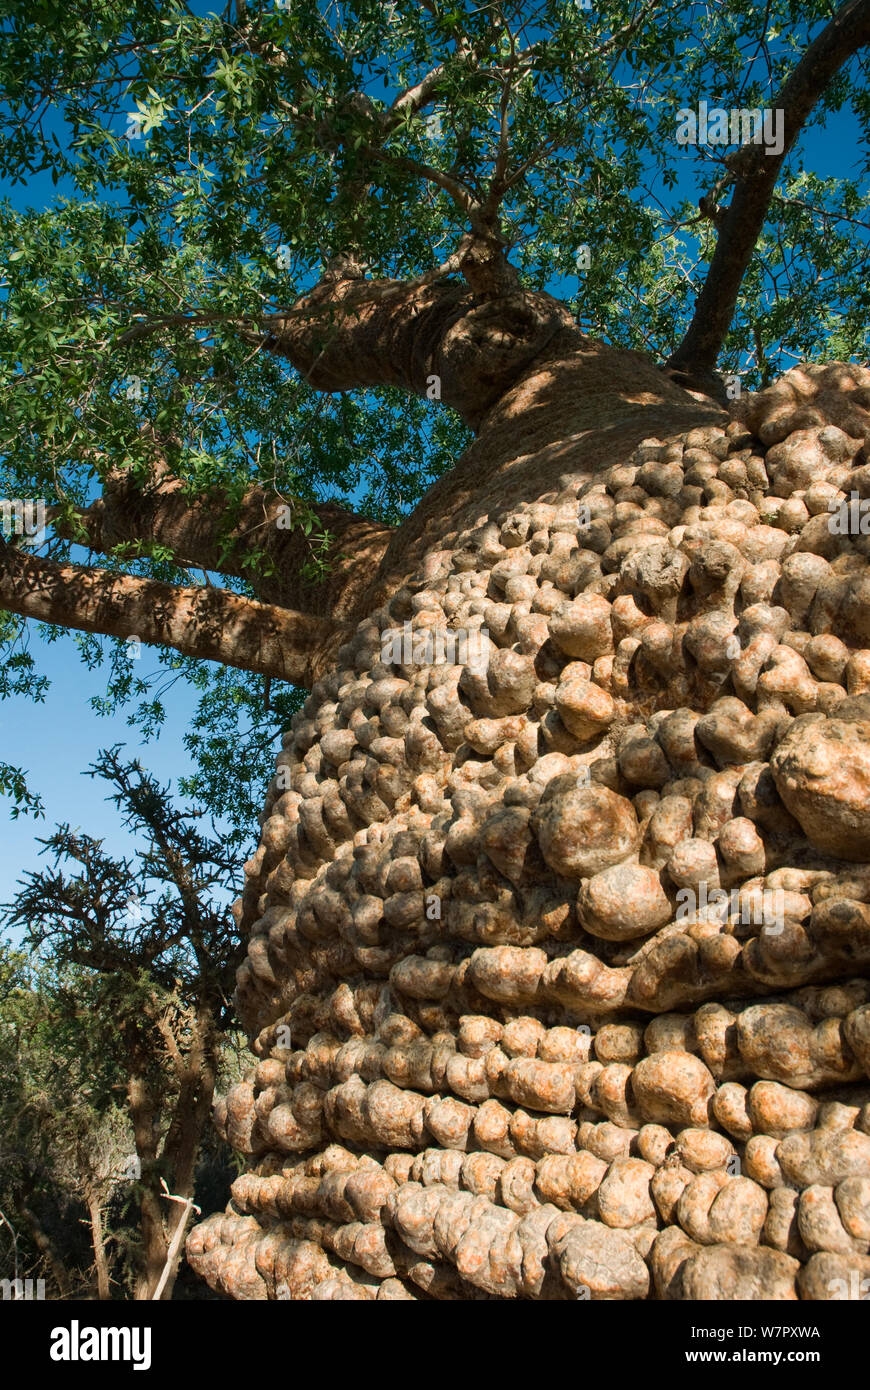 'Grand-mère' Baobab (Adansonia rubrostipa) avec les feuilles vertes de la saison des pluies. Close up d'écorce Lac Tsimanampetsotsa, parc national de Madagascar. Photographie prise lors du tournage de 'BBC Wild Madagascar' Série, février 2010. Banque D'Images